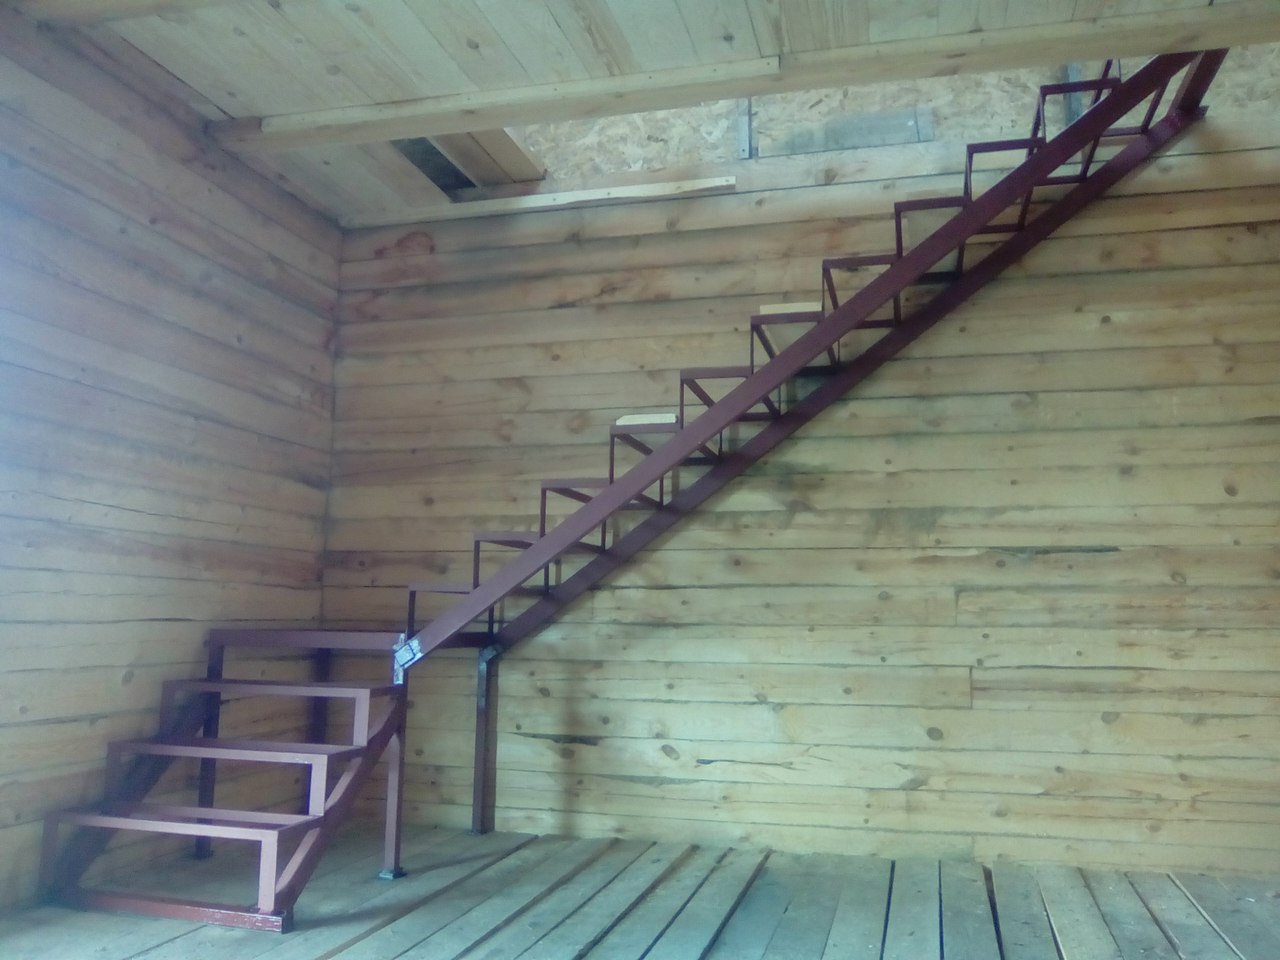 фото железной лестницы на второй этаж